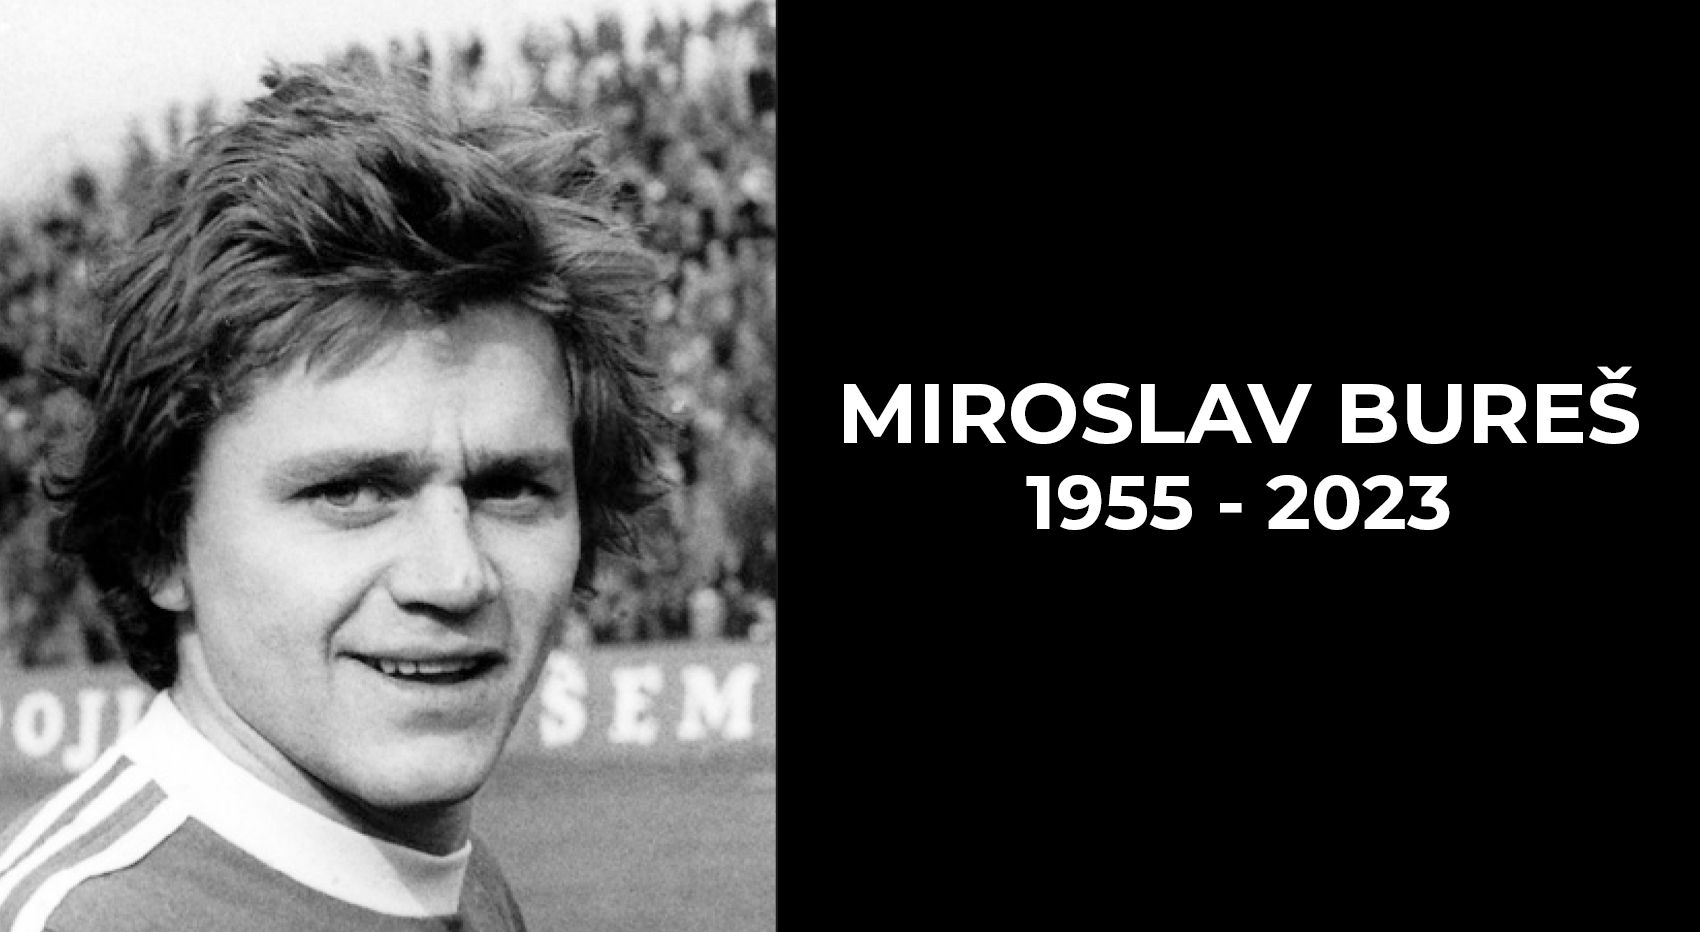 Ve vku 68 let ns bohuel navdy opustil pan Miroslav Bure...